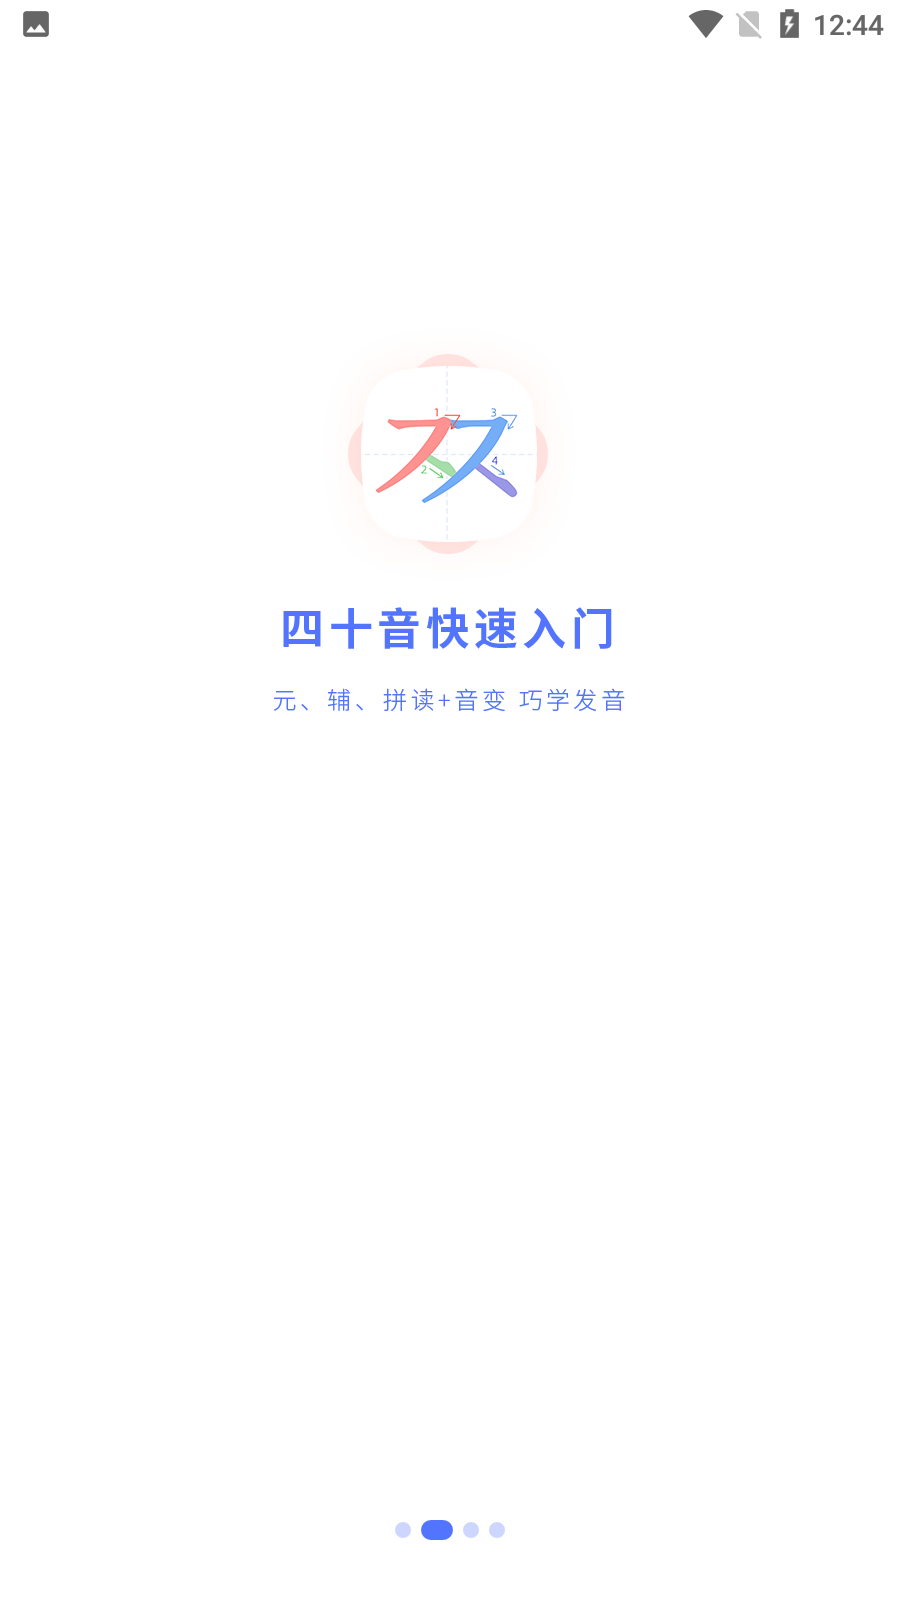 羊驼韩语网课安卓版图片2